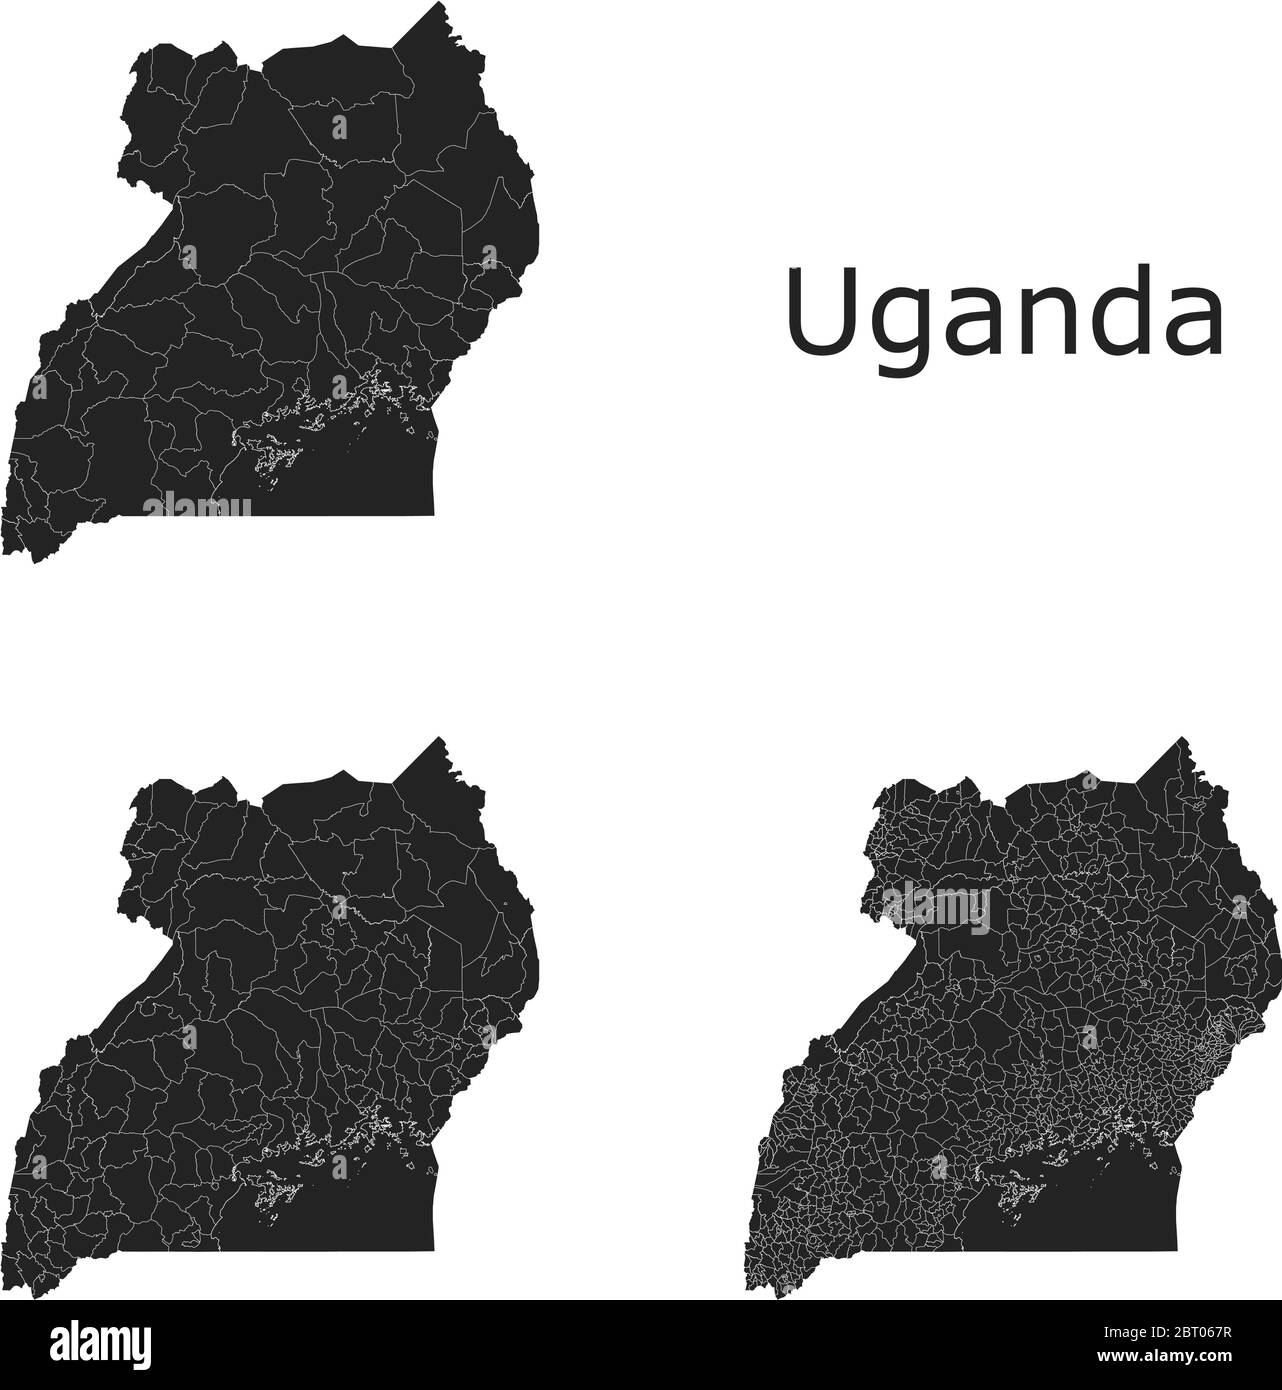 Cartes vectorielles de l'Ouganda avec régions administratives, municipalités, départements, frontières Illustration de Vecteur